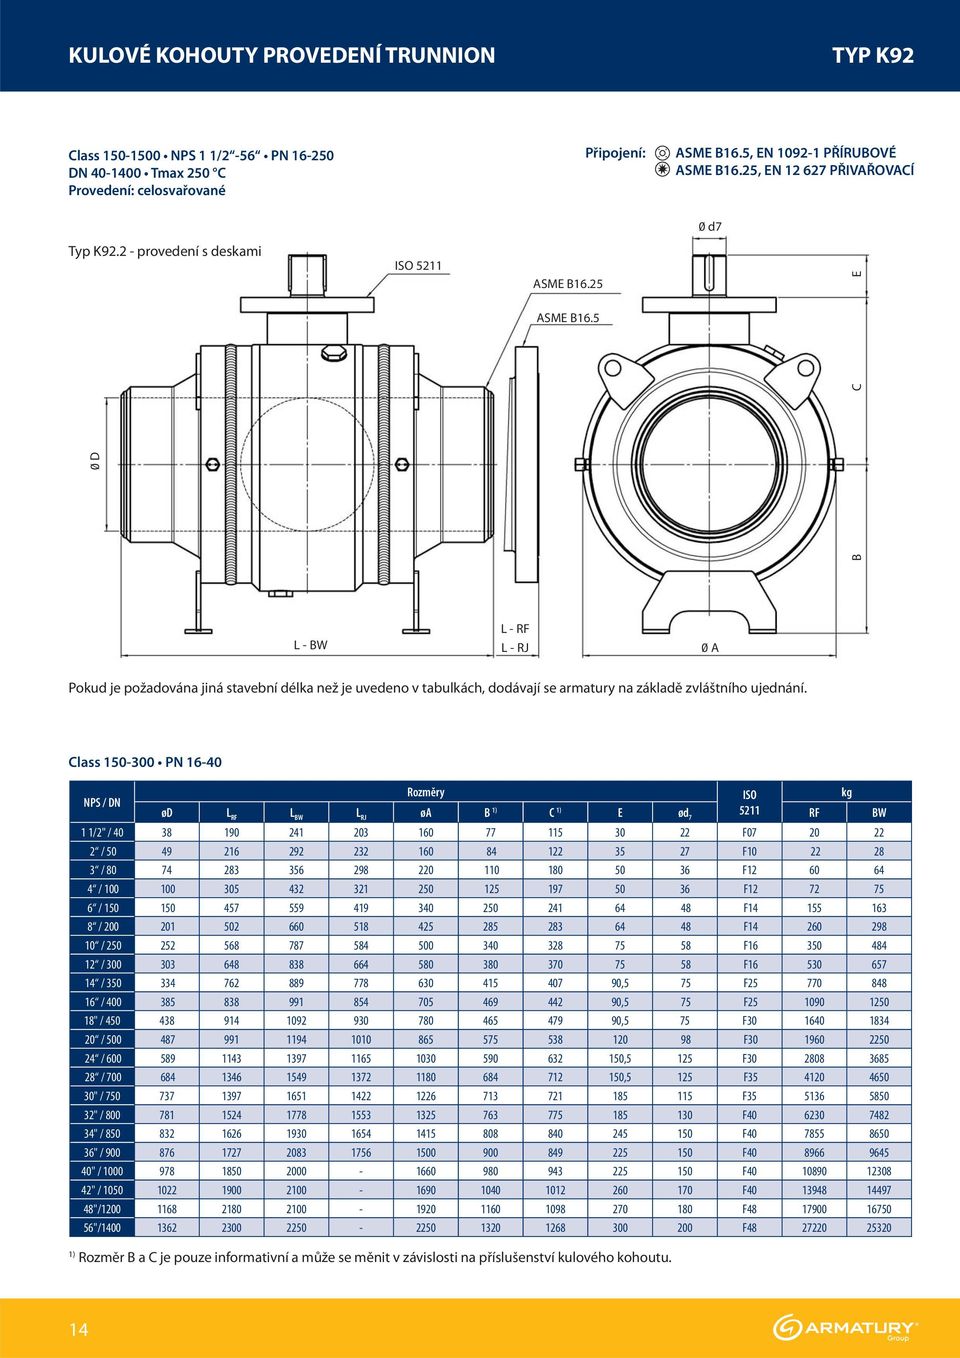 5 B 0 D C L - BW L - RF L - RJ 0 A Pokud je požadována jiná stavební délka než je uvedeno v tabulkách, dodávají se armatury na základě zvláštního ujednání.